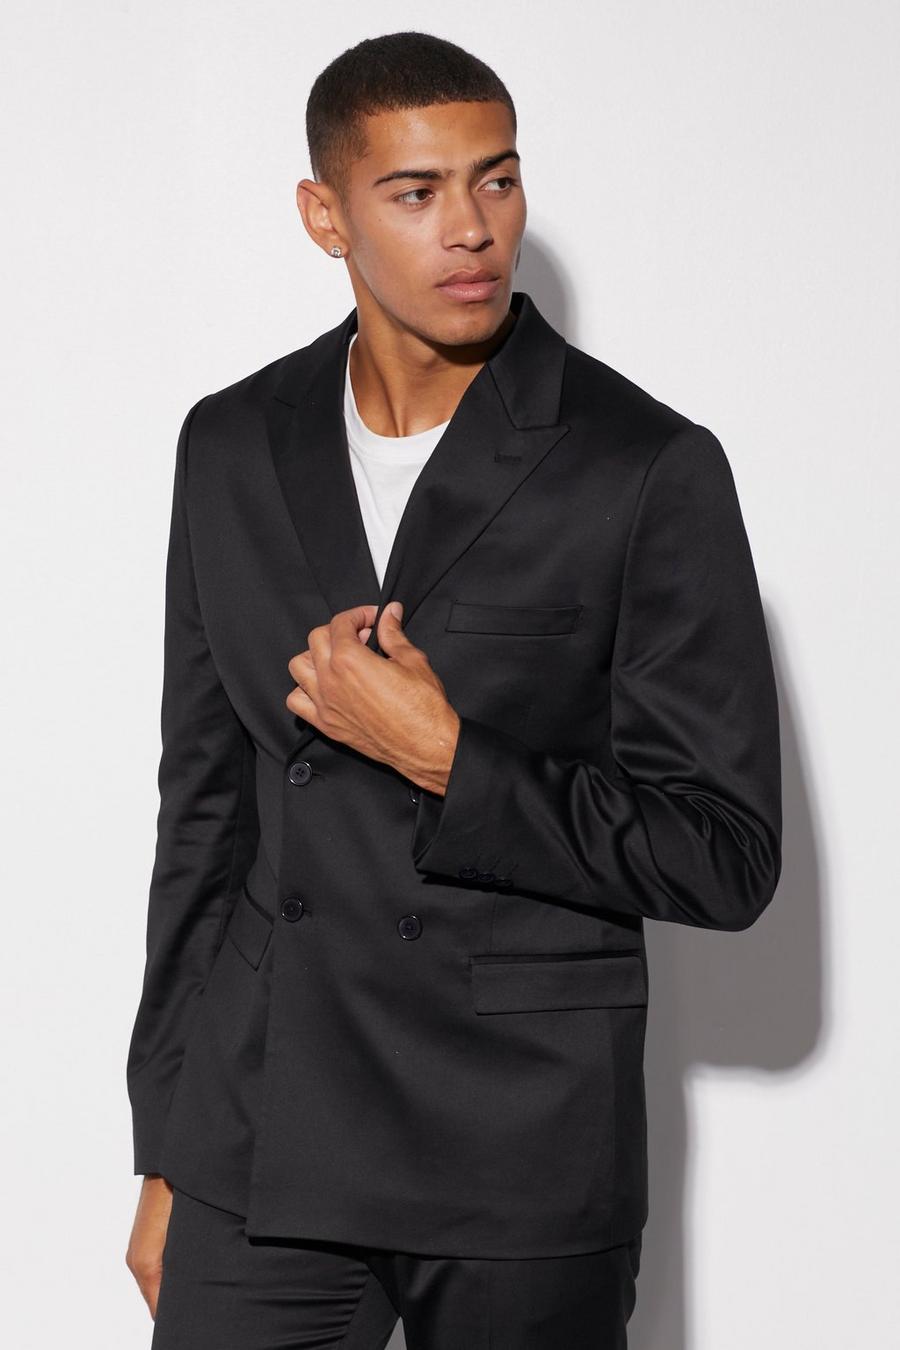 שחור negro ז'קט חליפה בגזרה צרה מסאטן עם דשים כפולים